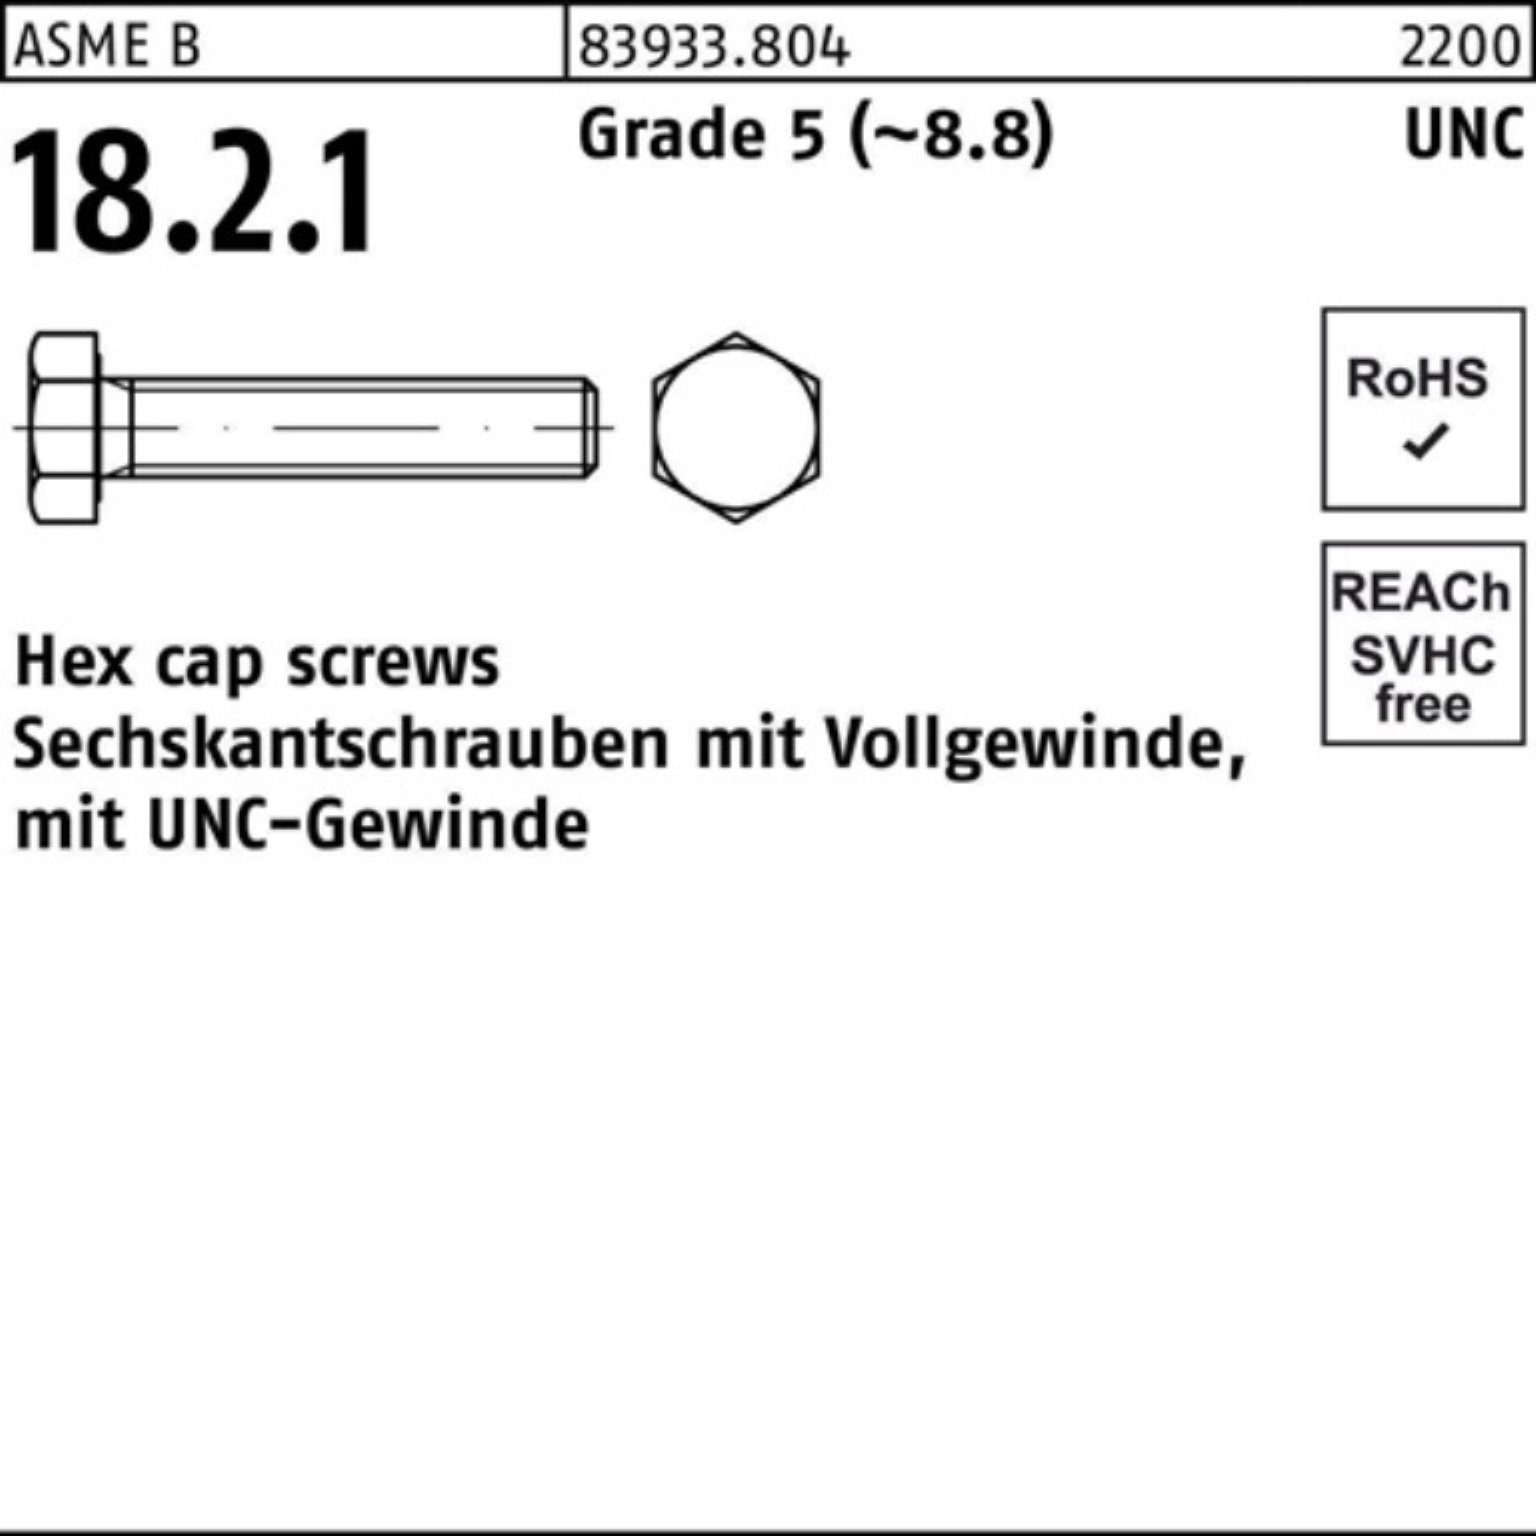 Reyher Sechskantschraube 100er Pack Sechskantschraube R 83933 UNC-Gewinde VG 5/8x 2 Grade 5 (8